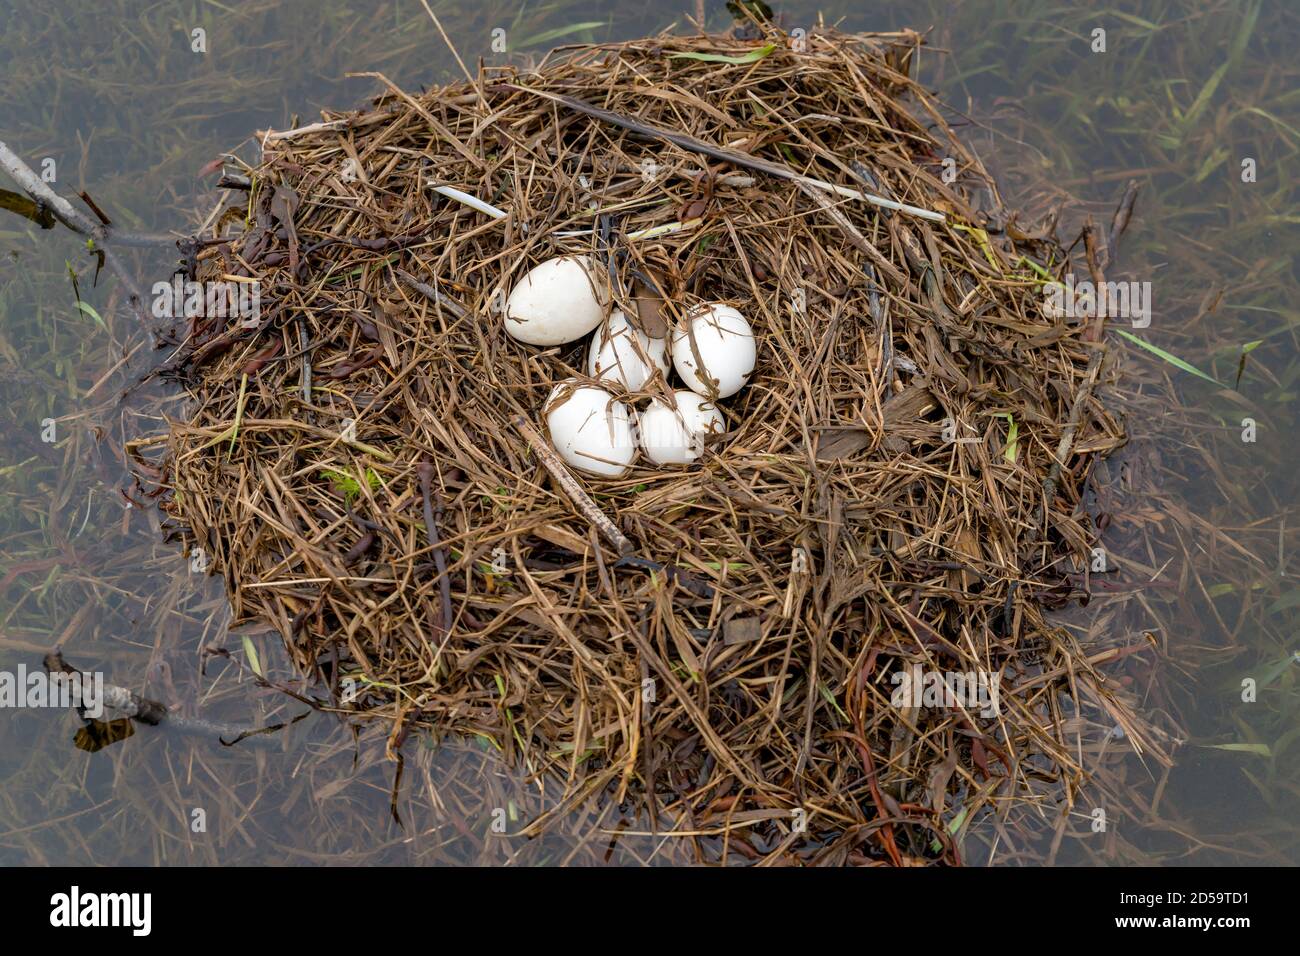 Eine große Kanadagans nisten mit fünf Eiern darin. Das Nest ist im Wasser. Die Gans ist nicht vorhanden. Etwas dunkler Tag. Stockfoto